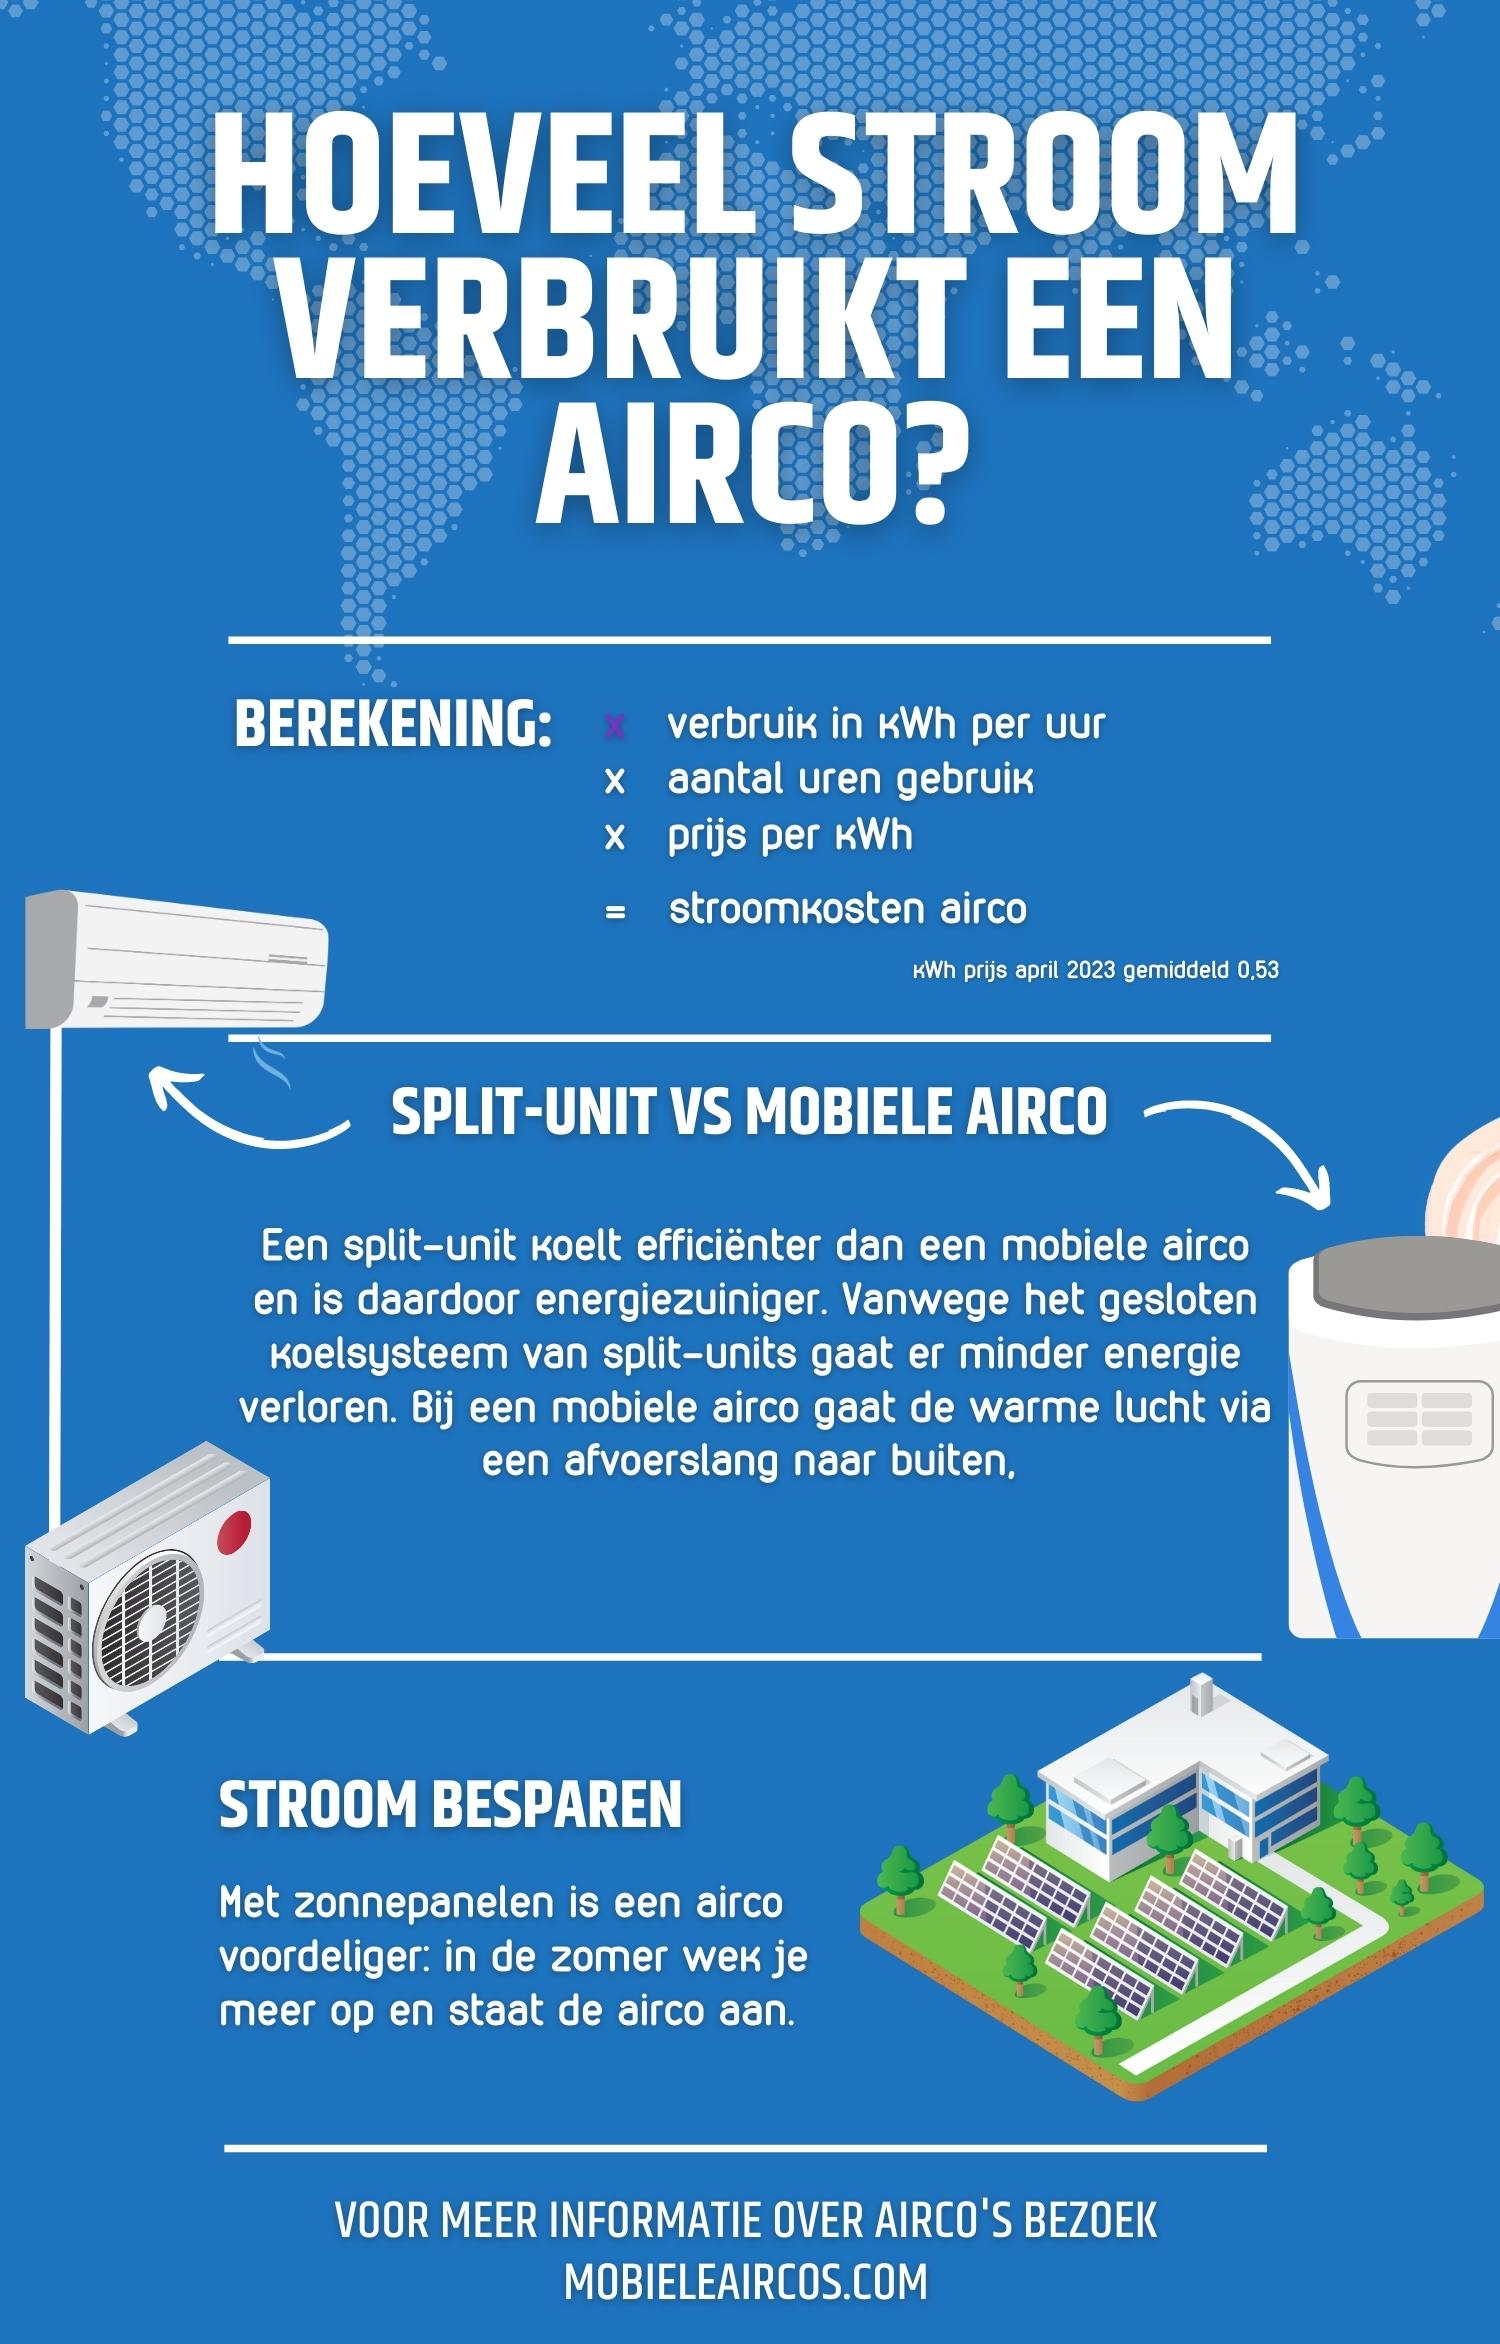 Irrigatie Afgeschaft Autonomie Hoeveel stroom verbruikt een airco? | Uitleg + Infographic (2023)